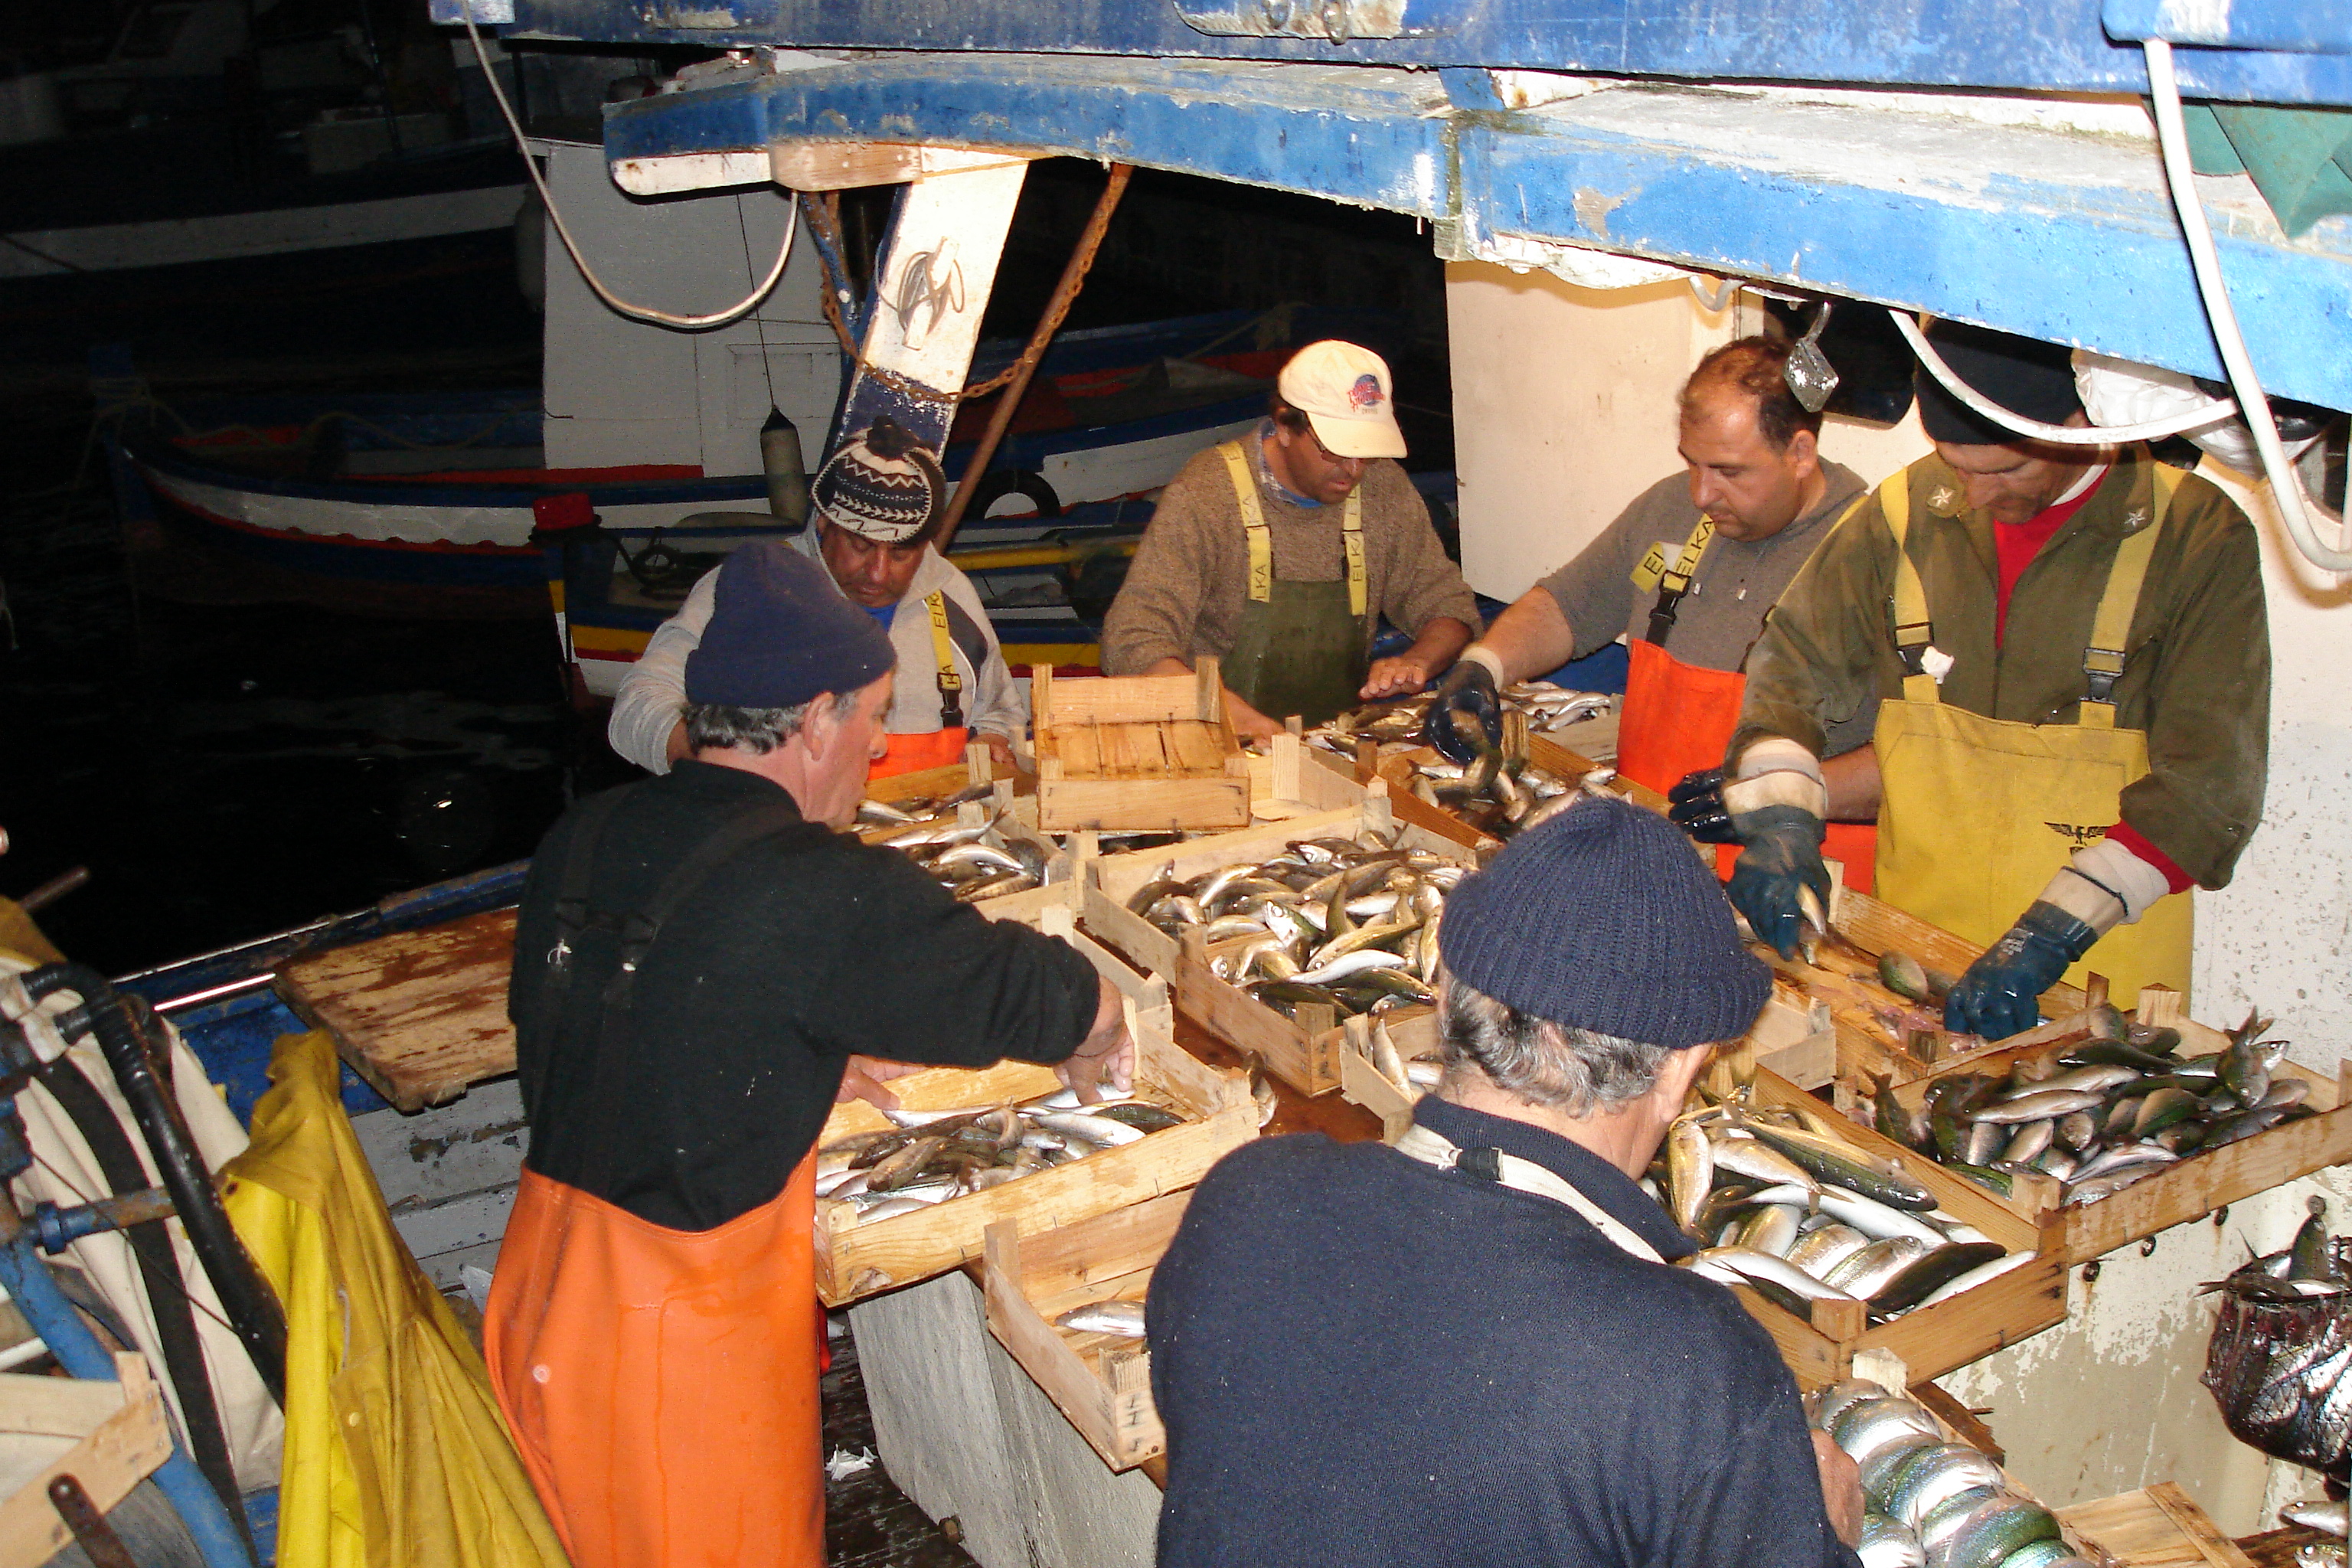 The fishermen of Sicily preparing for the Feast of St. Joseph